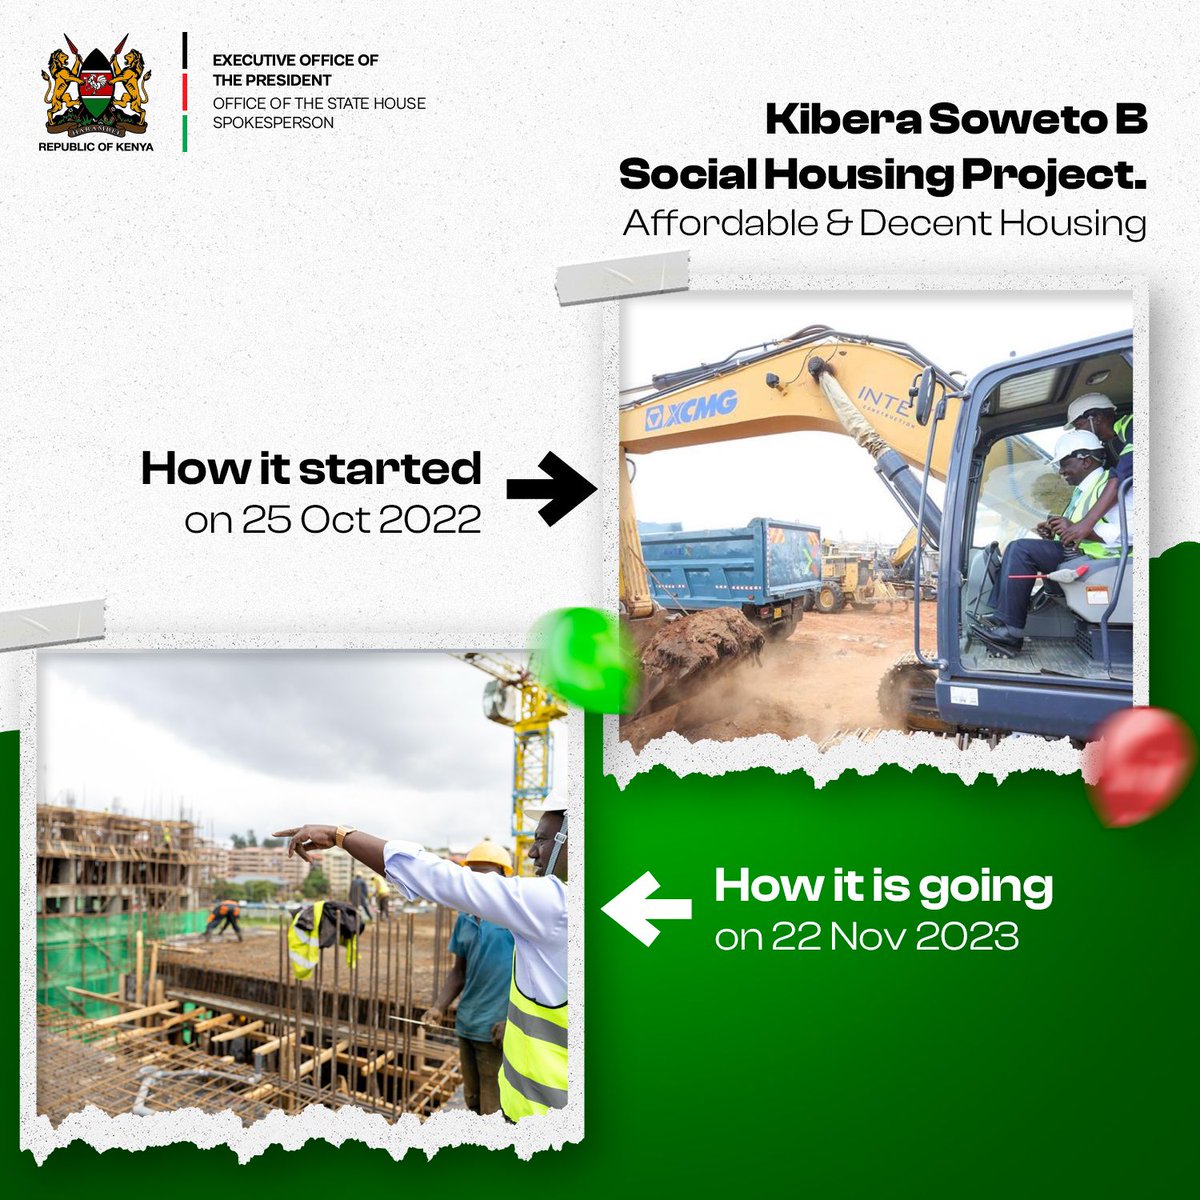 President William Ruto On The Plan On Housing Program.
#PromiseMadePromiseKept